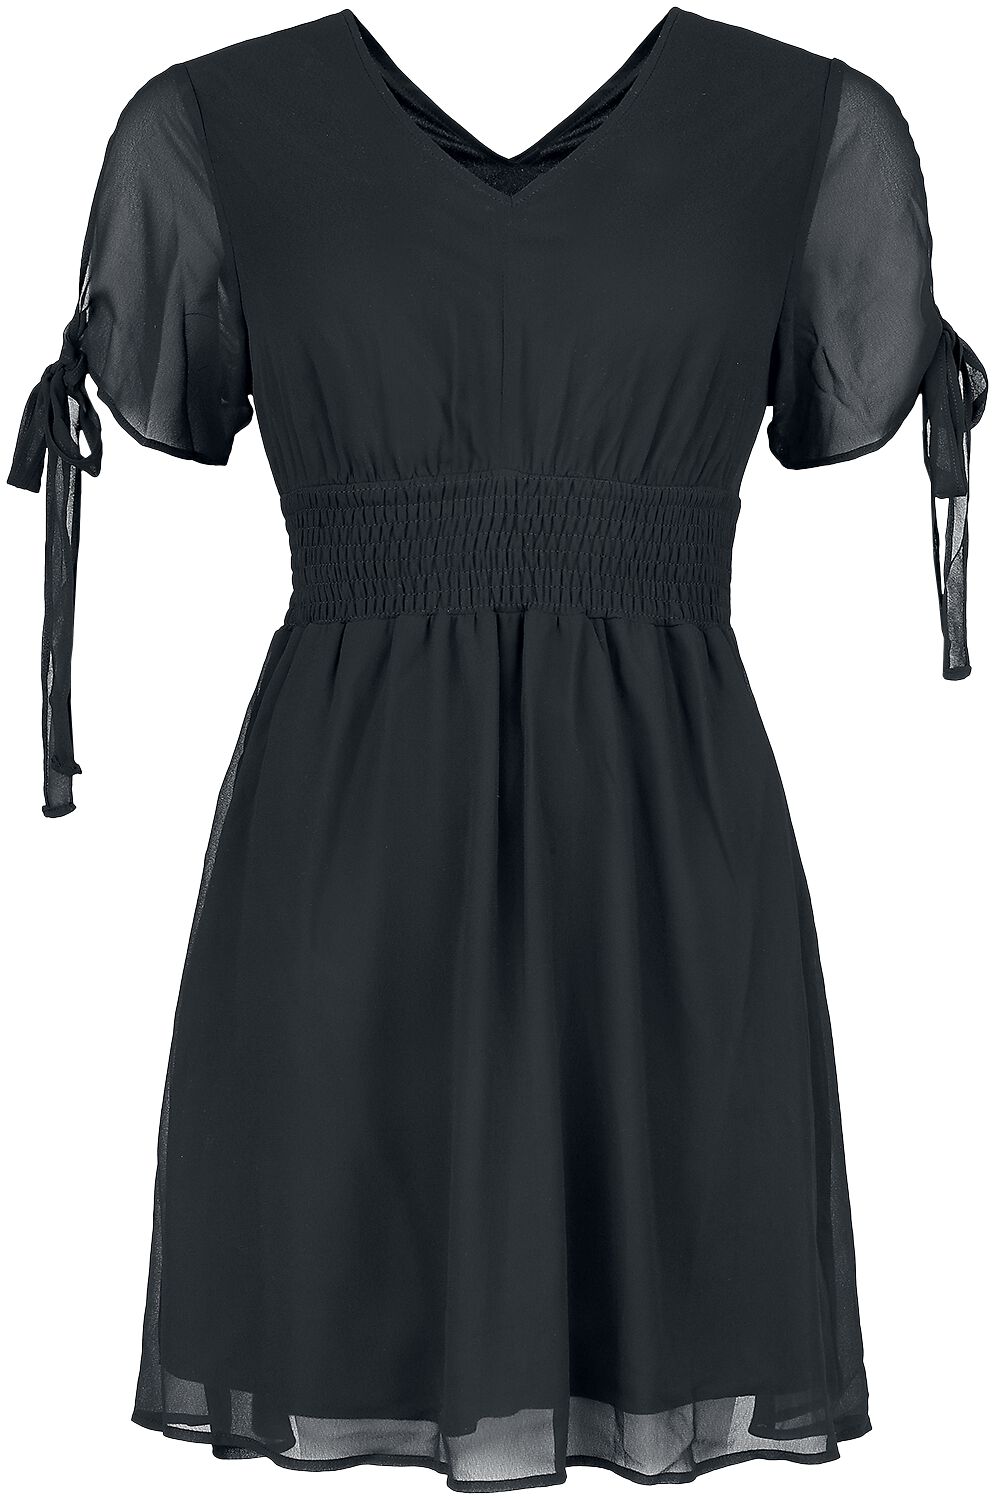 Innocent - Gothic Kurzes Kleid - Carme Dress - S bis 4XL - für Damen - Größe M - schwarz